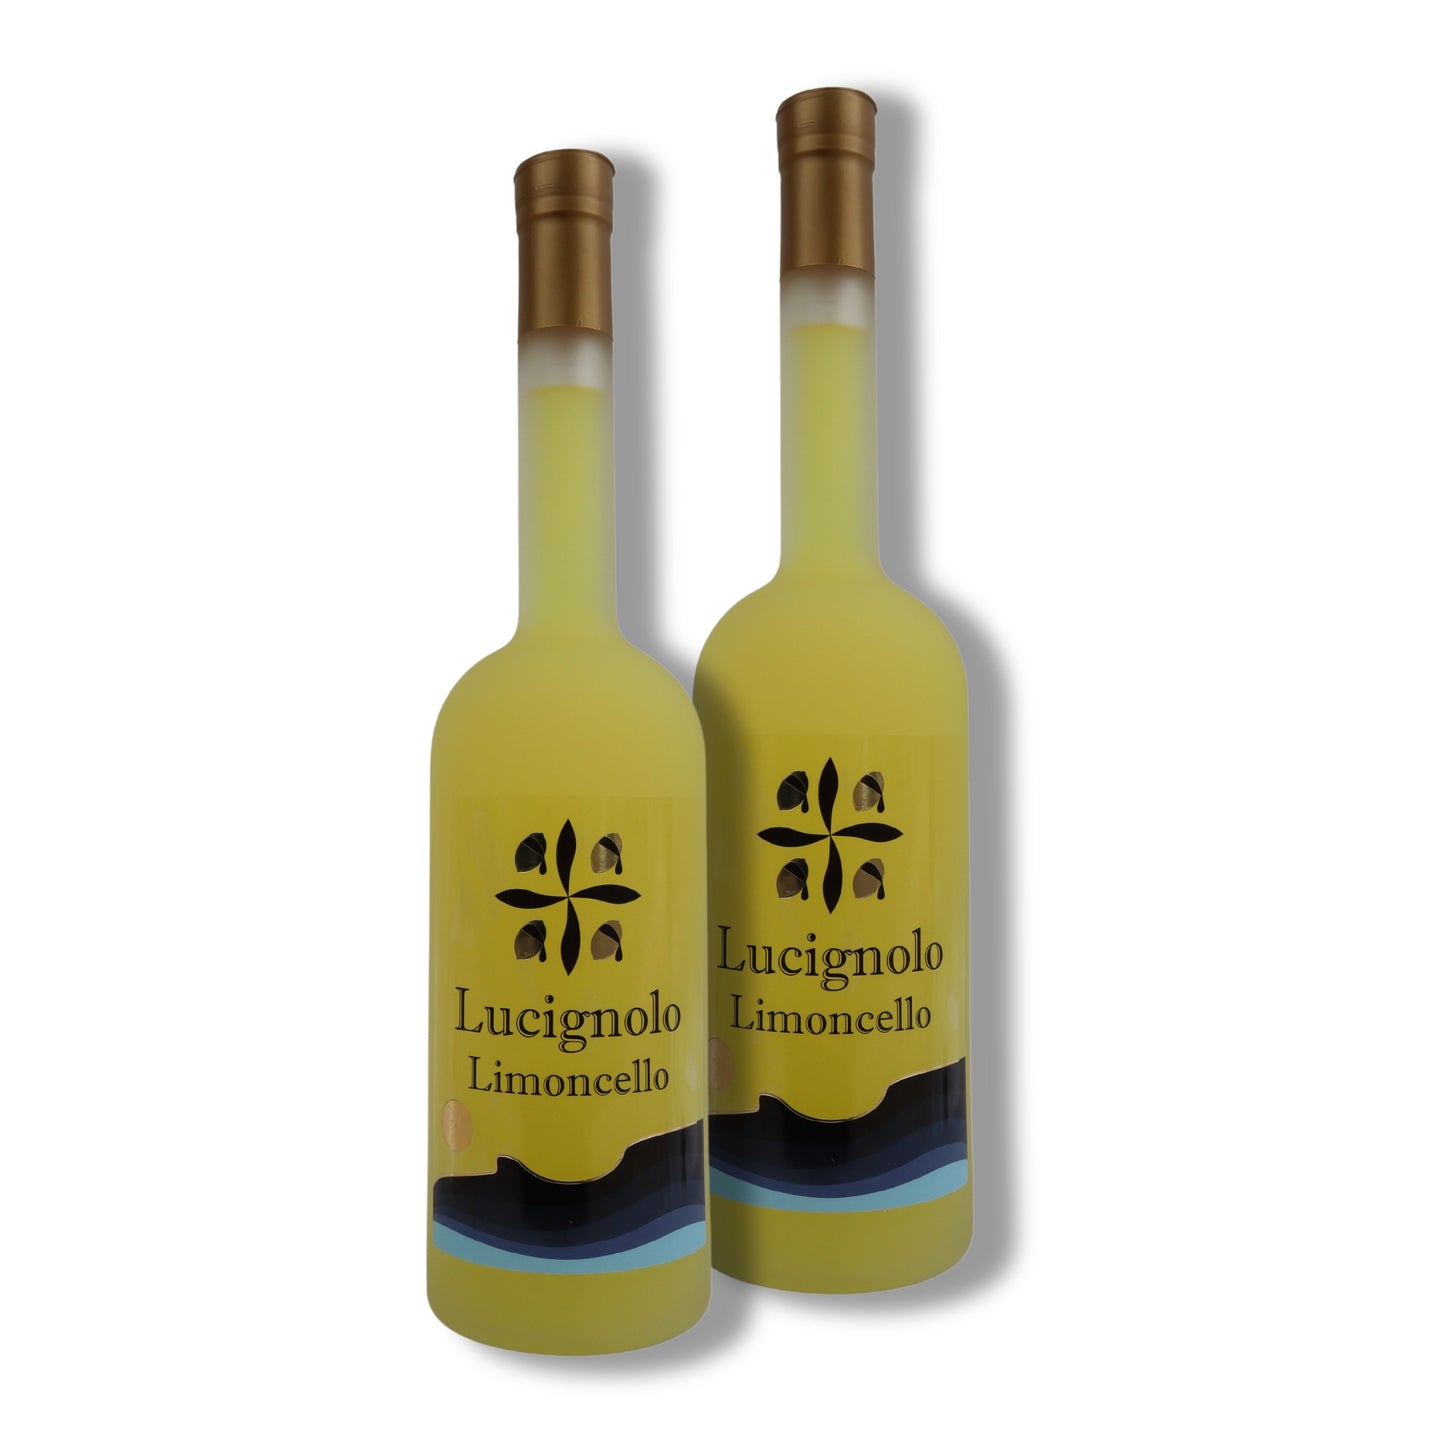 Double Lucignolo Limoncello - 2 x Bottle of 0.7 L